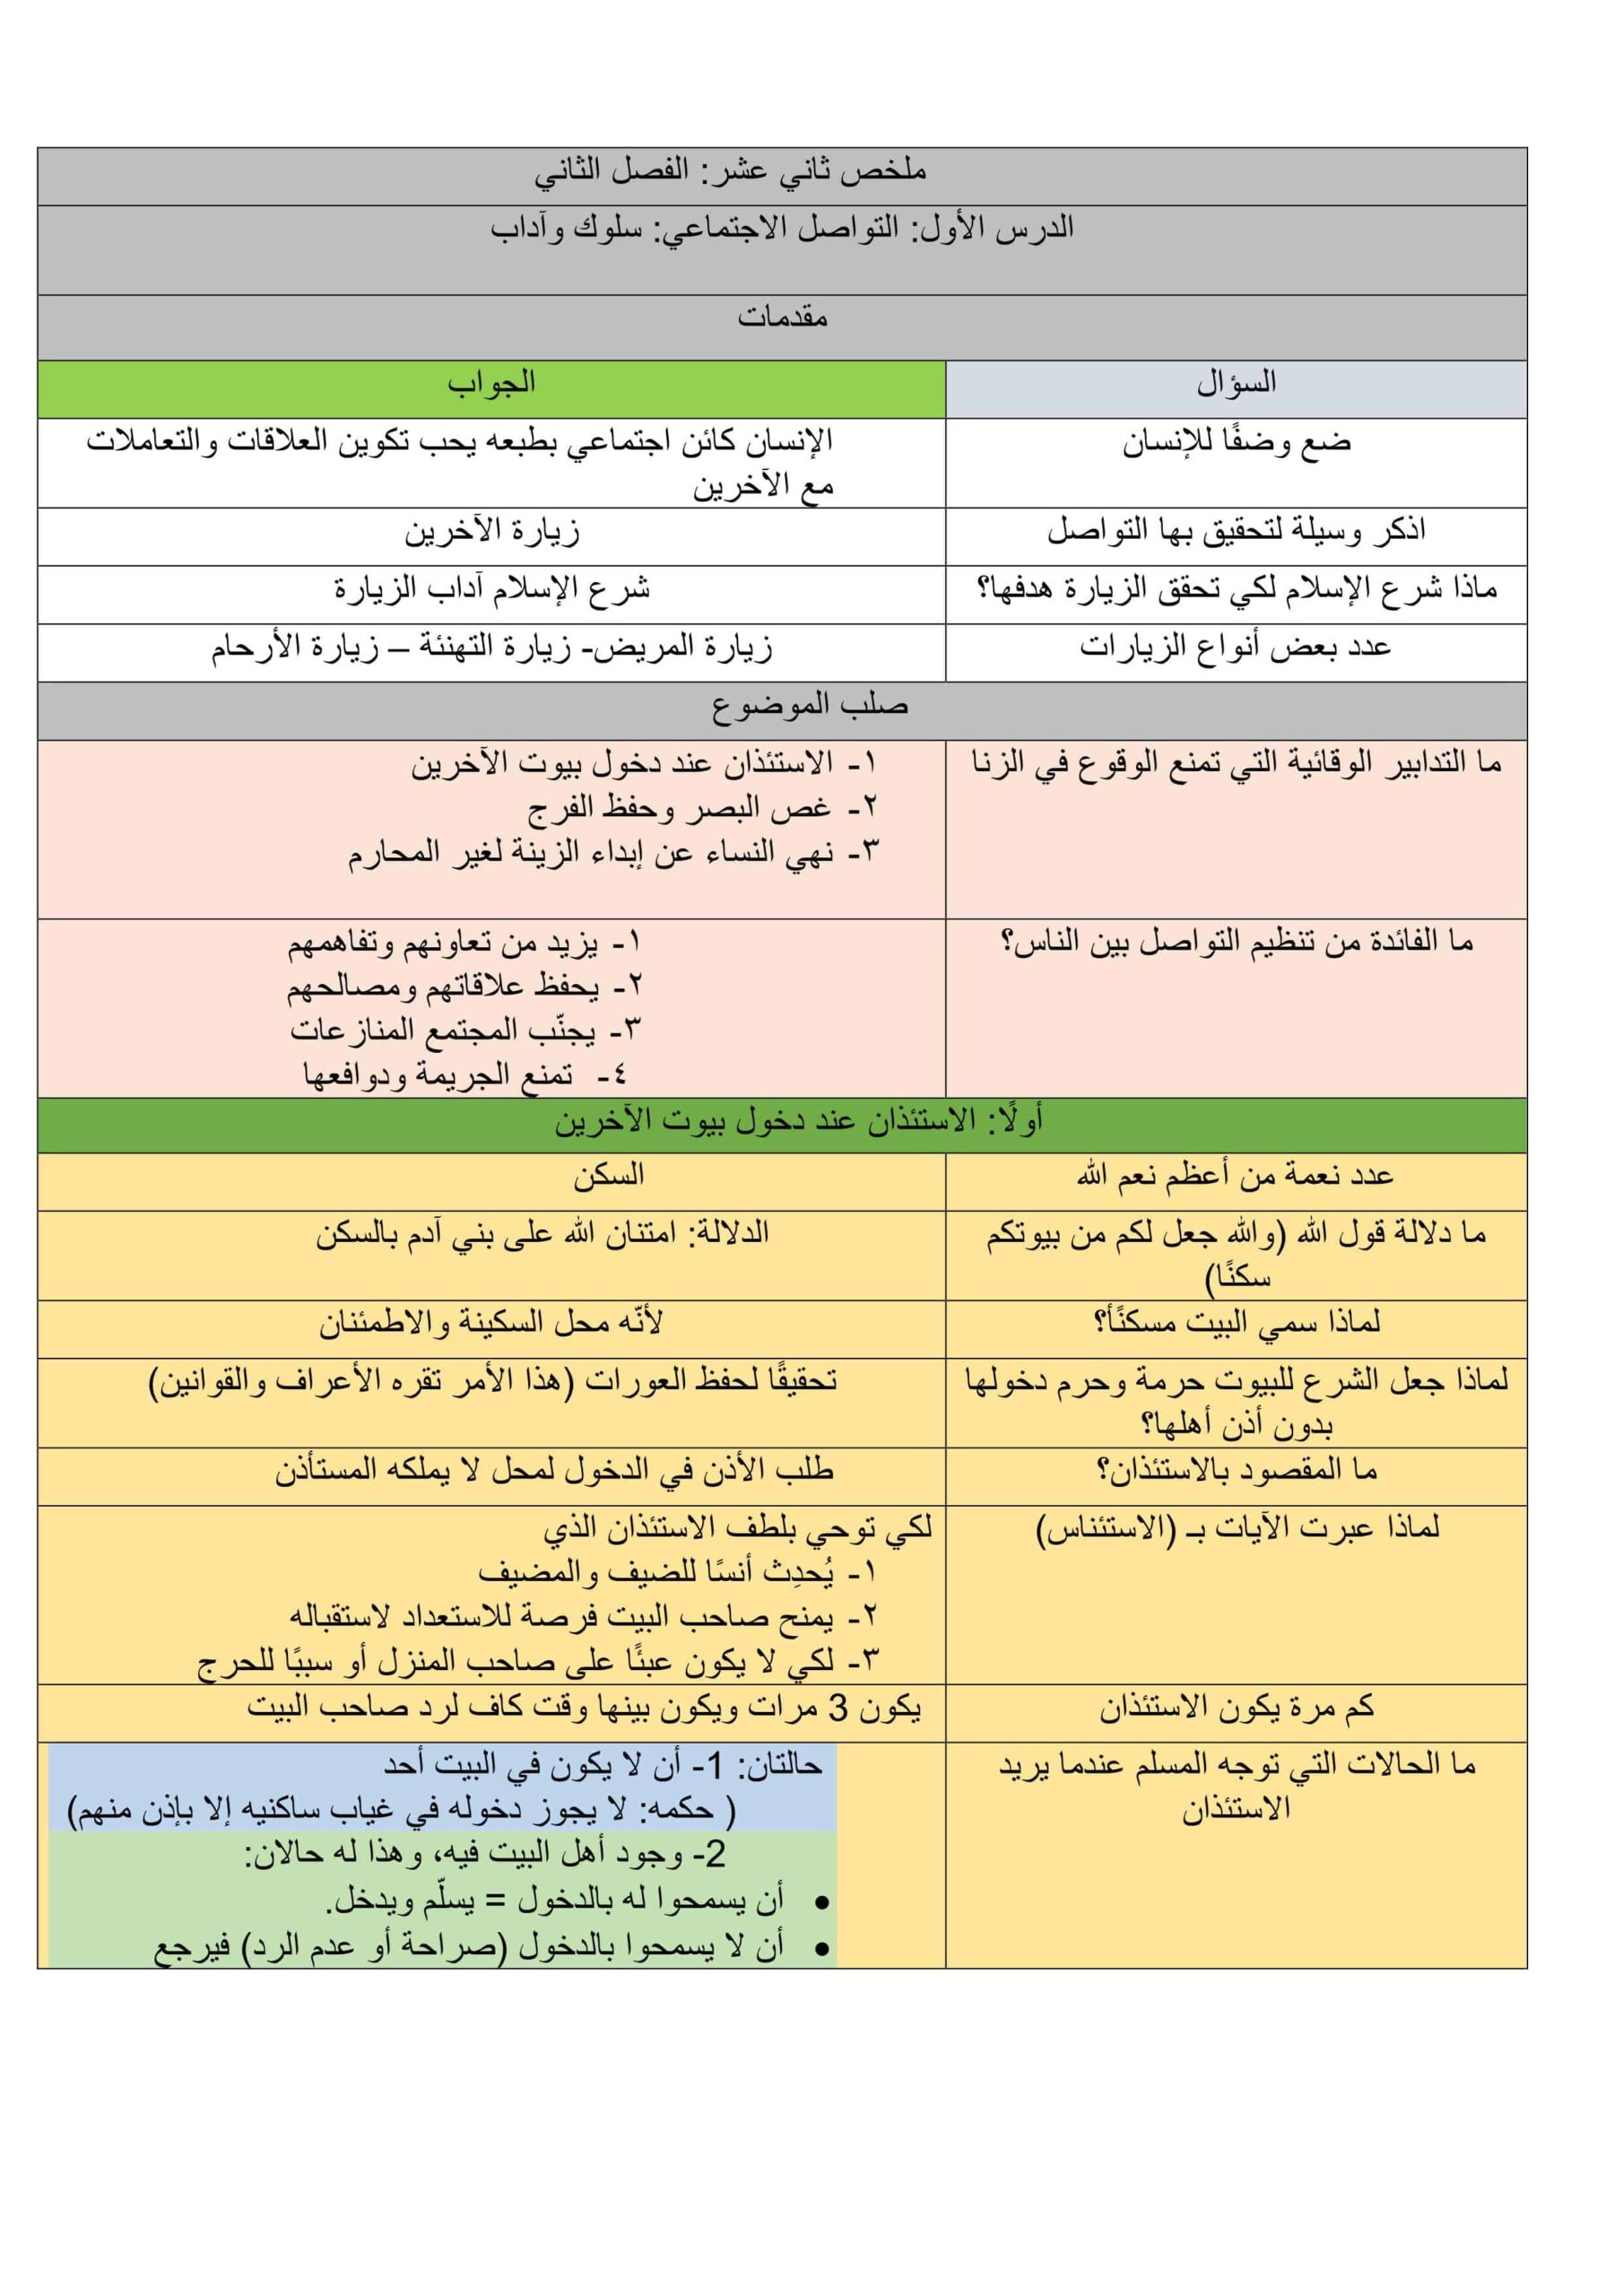 ملخص درس التواصل الإجتماعي سلوك وآداب التربية الإسلامية الصف الثاني عشر